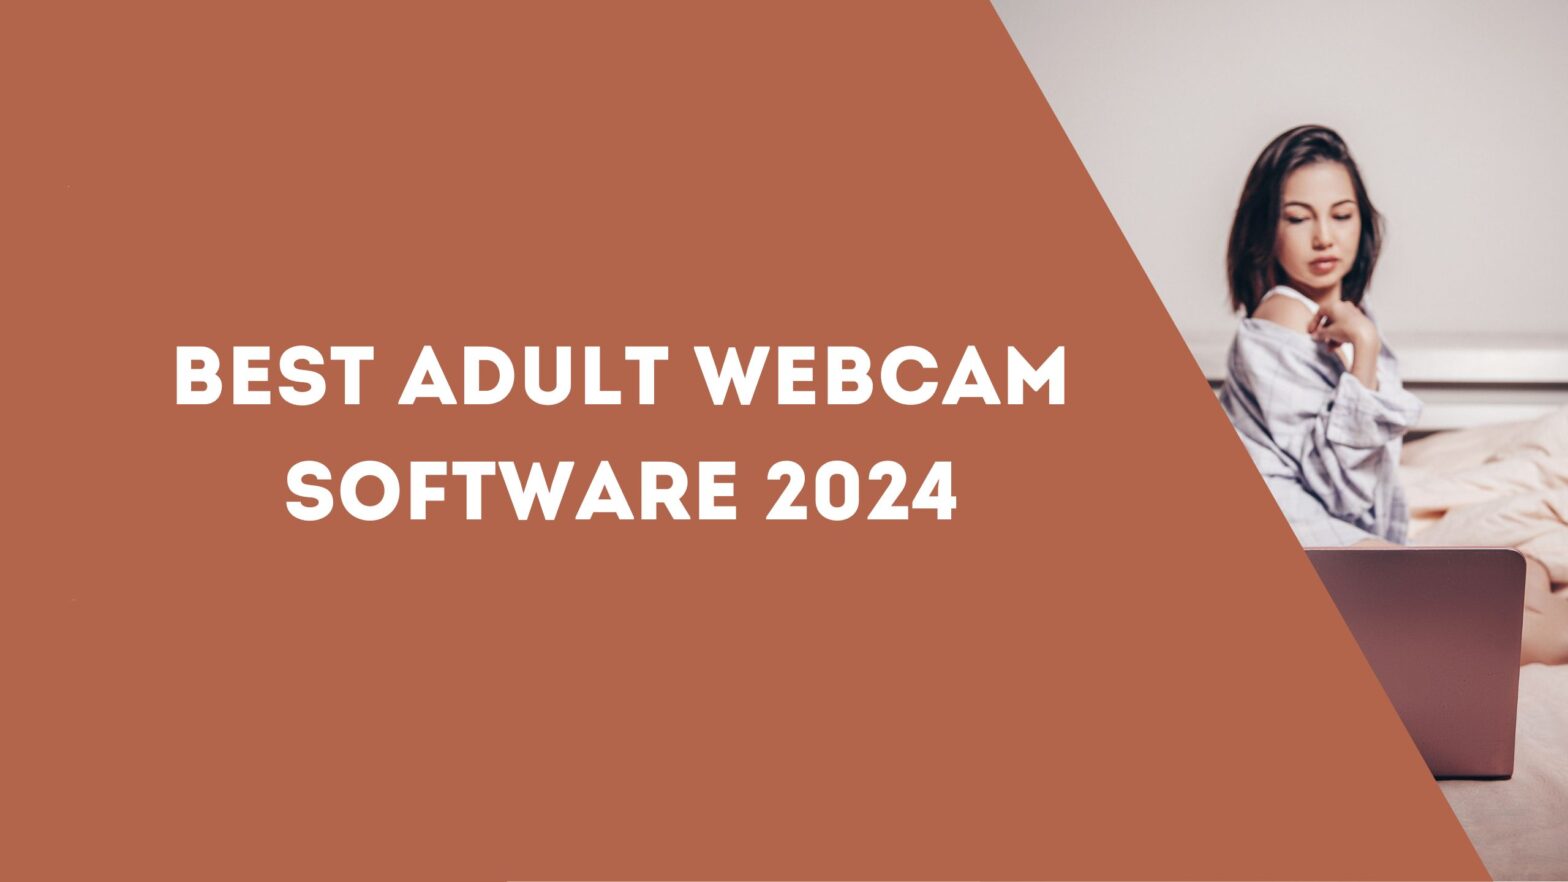 Best Adult Webcam Software 2024